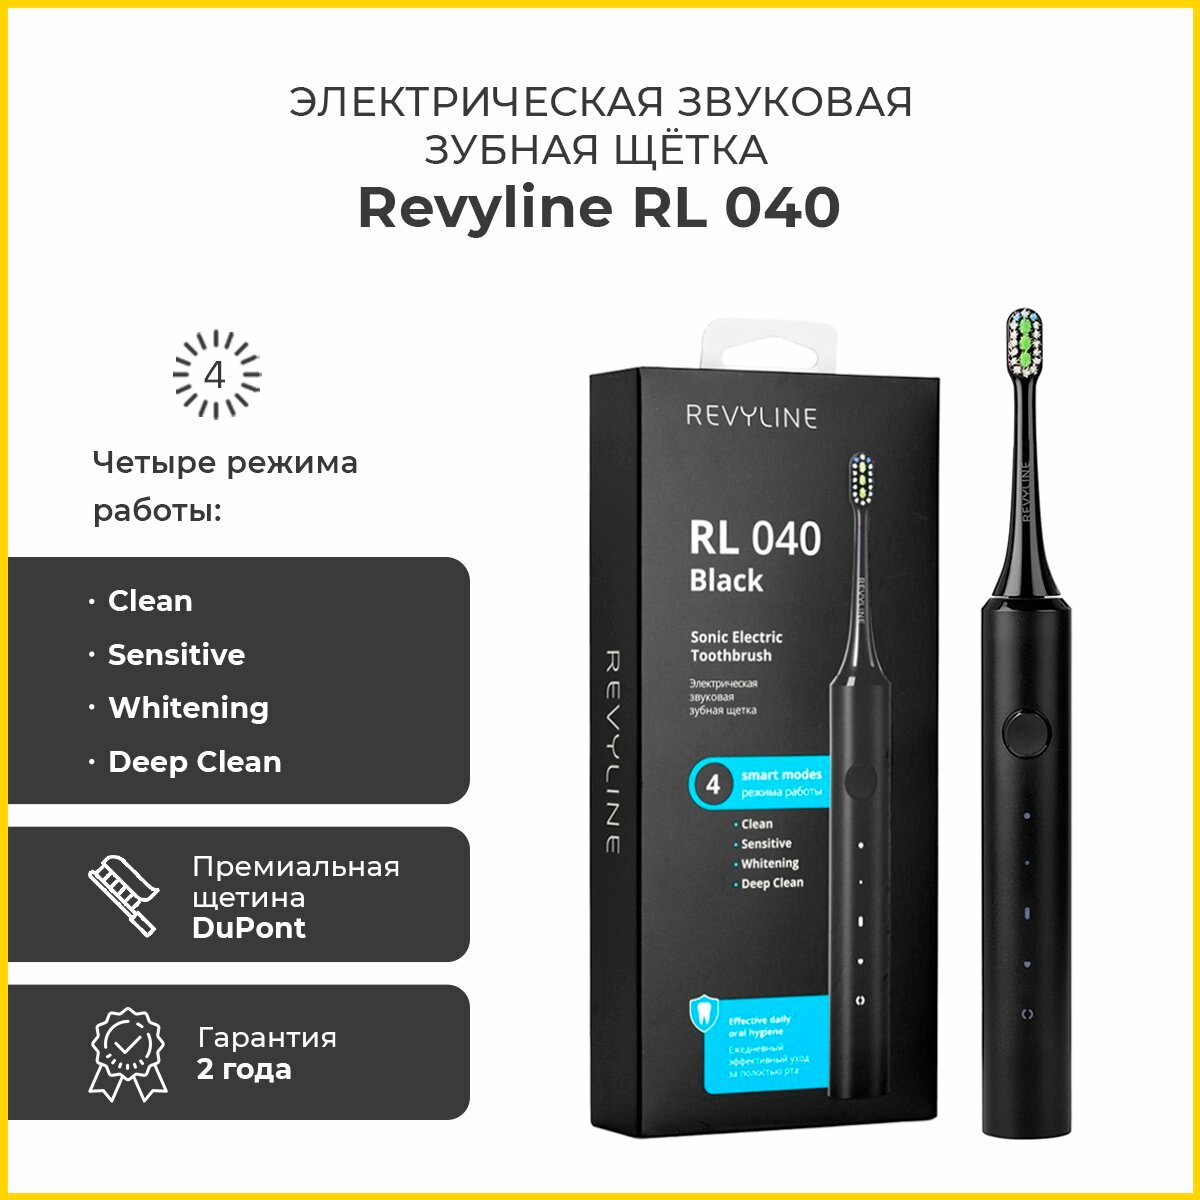 Электрическая звуковая щетка Revyline RL 040, черная